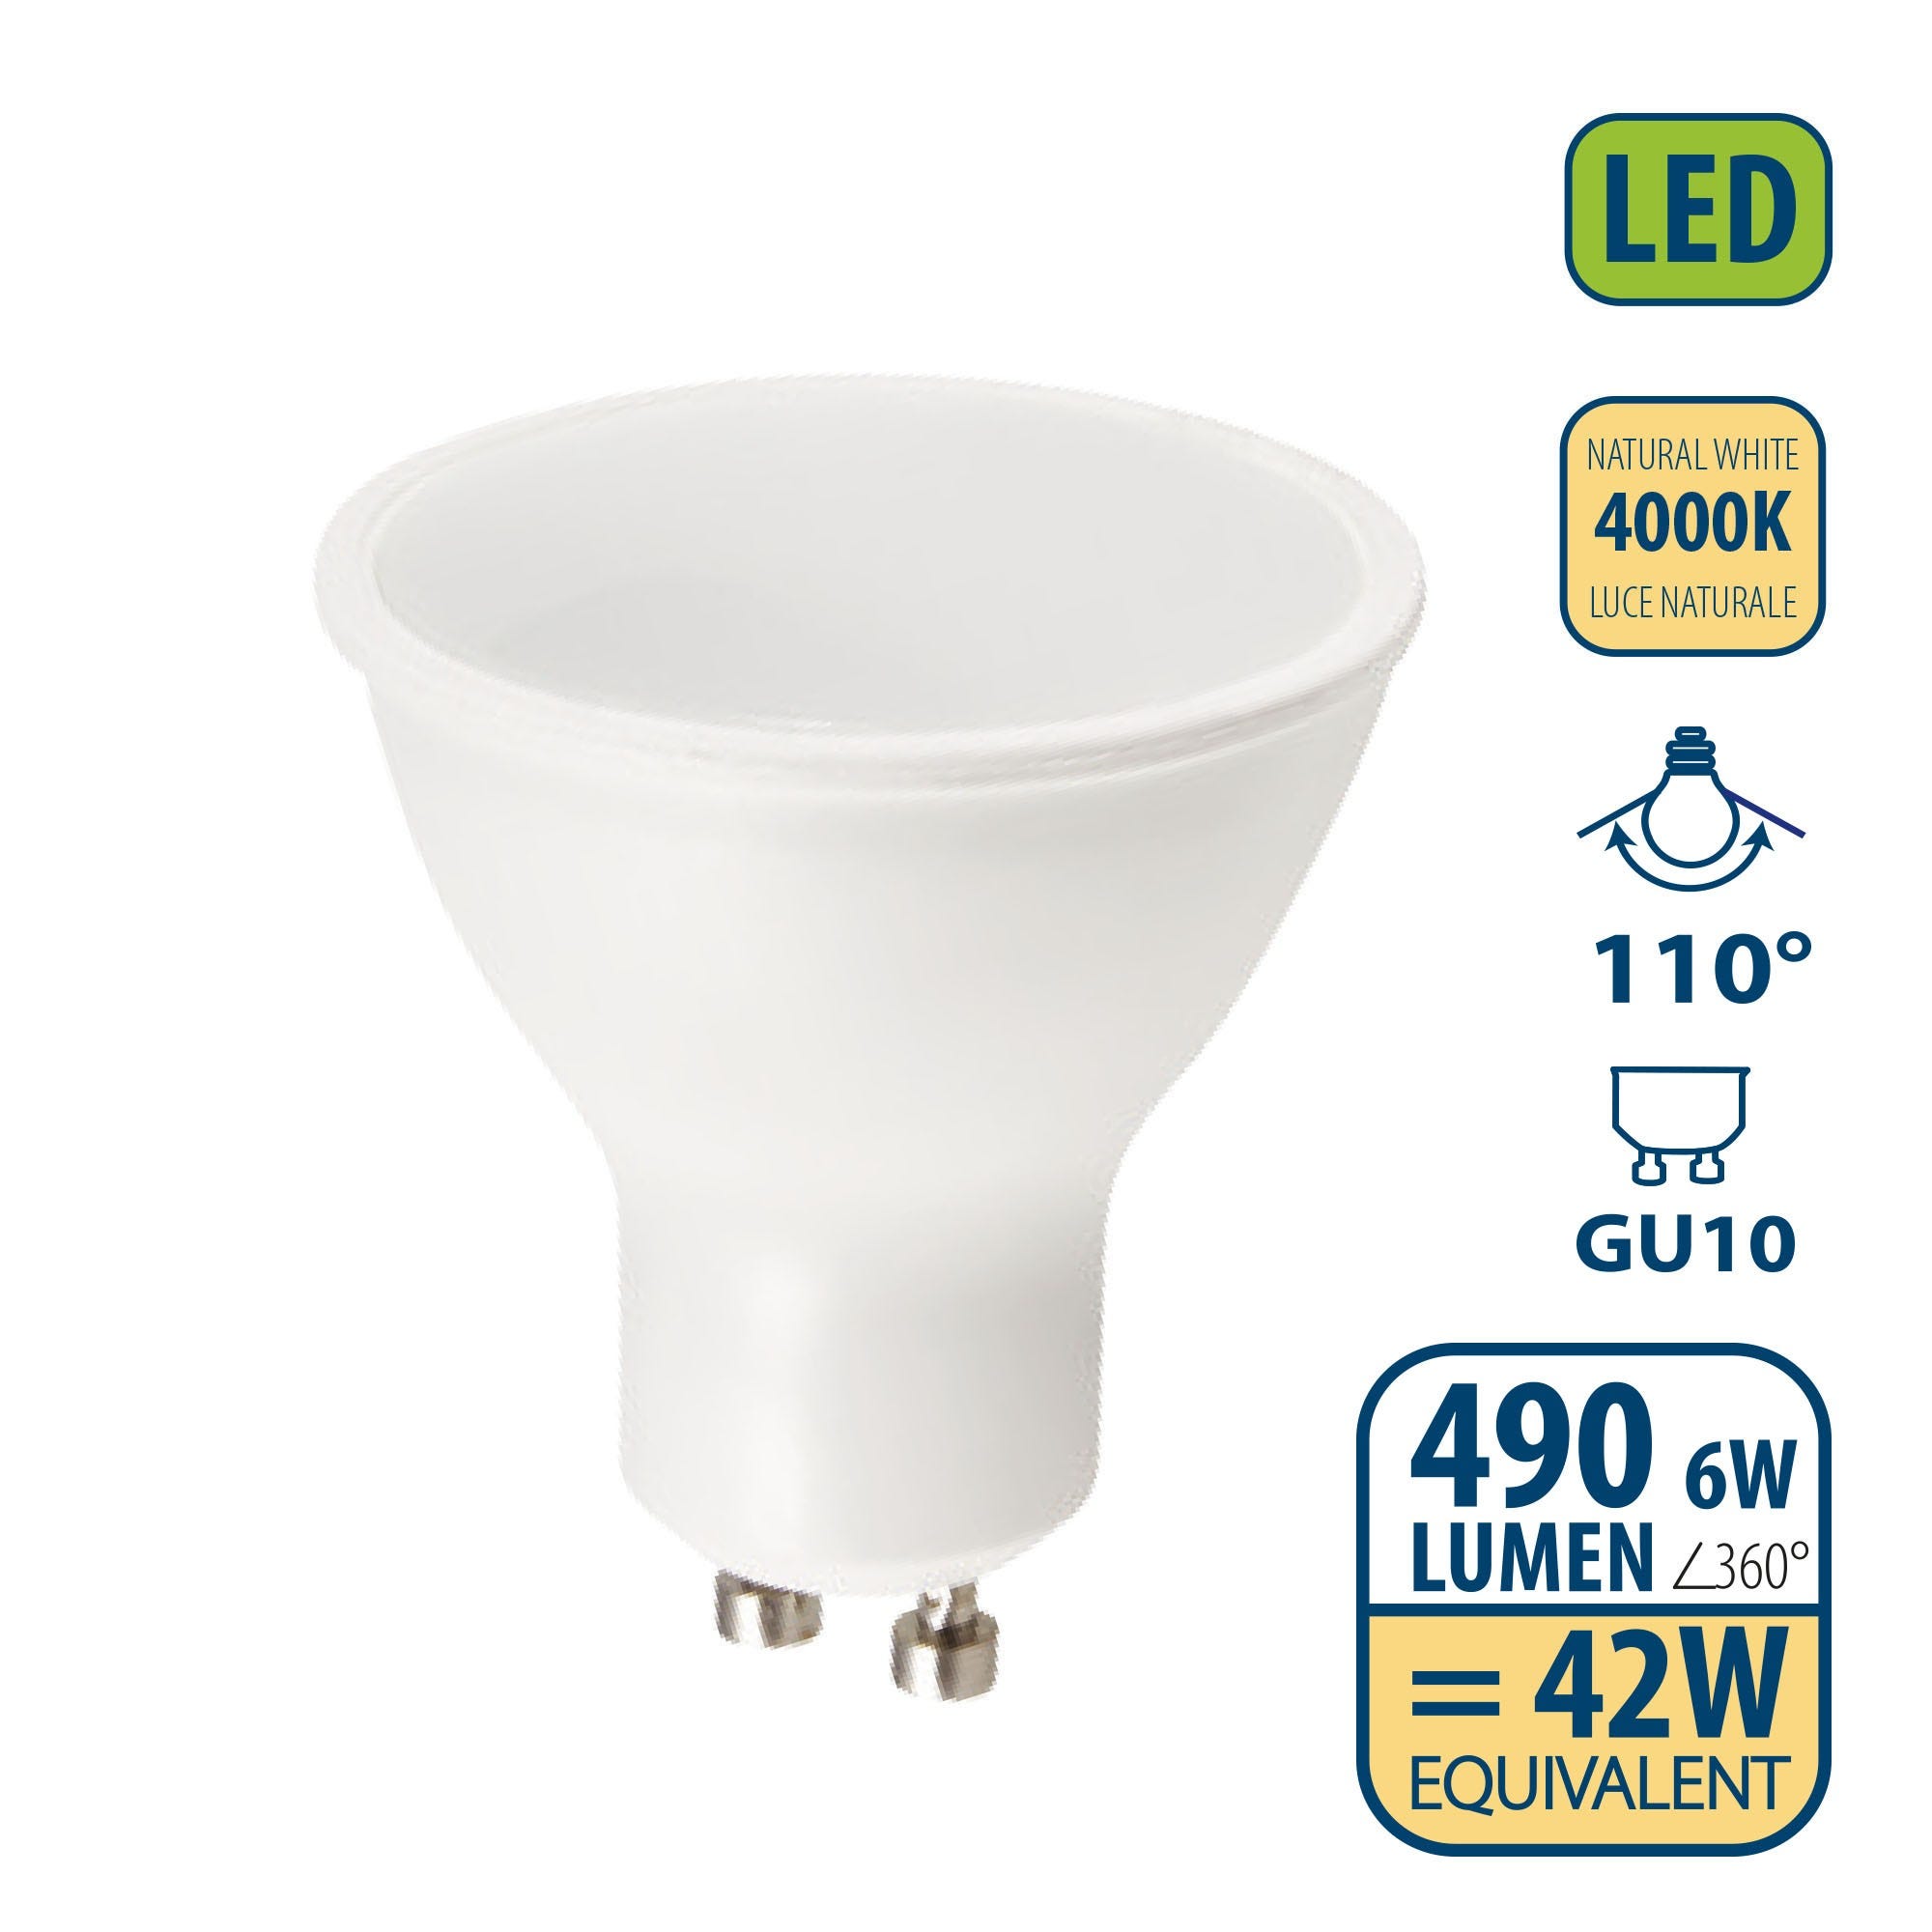 Ampoule LED SMD, spot GU10, 230V, 6W / 490lm, 4000K, 110°